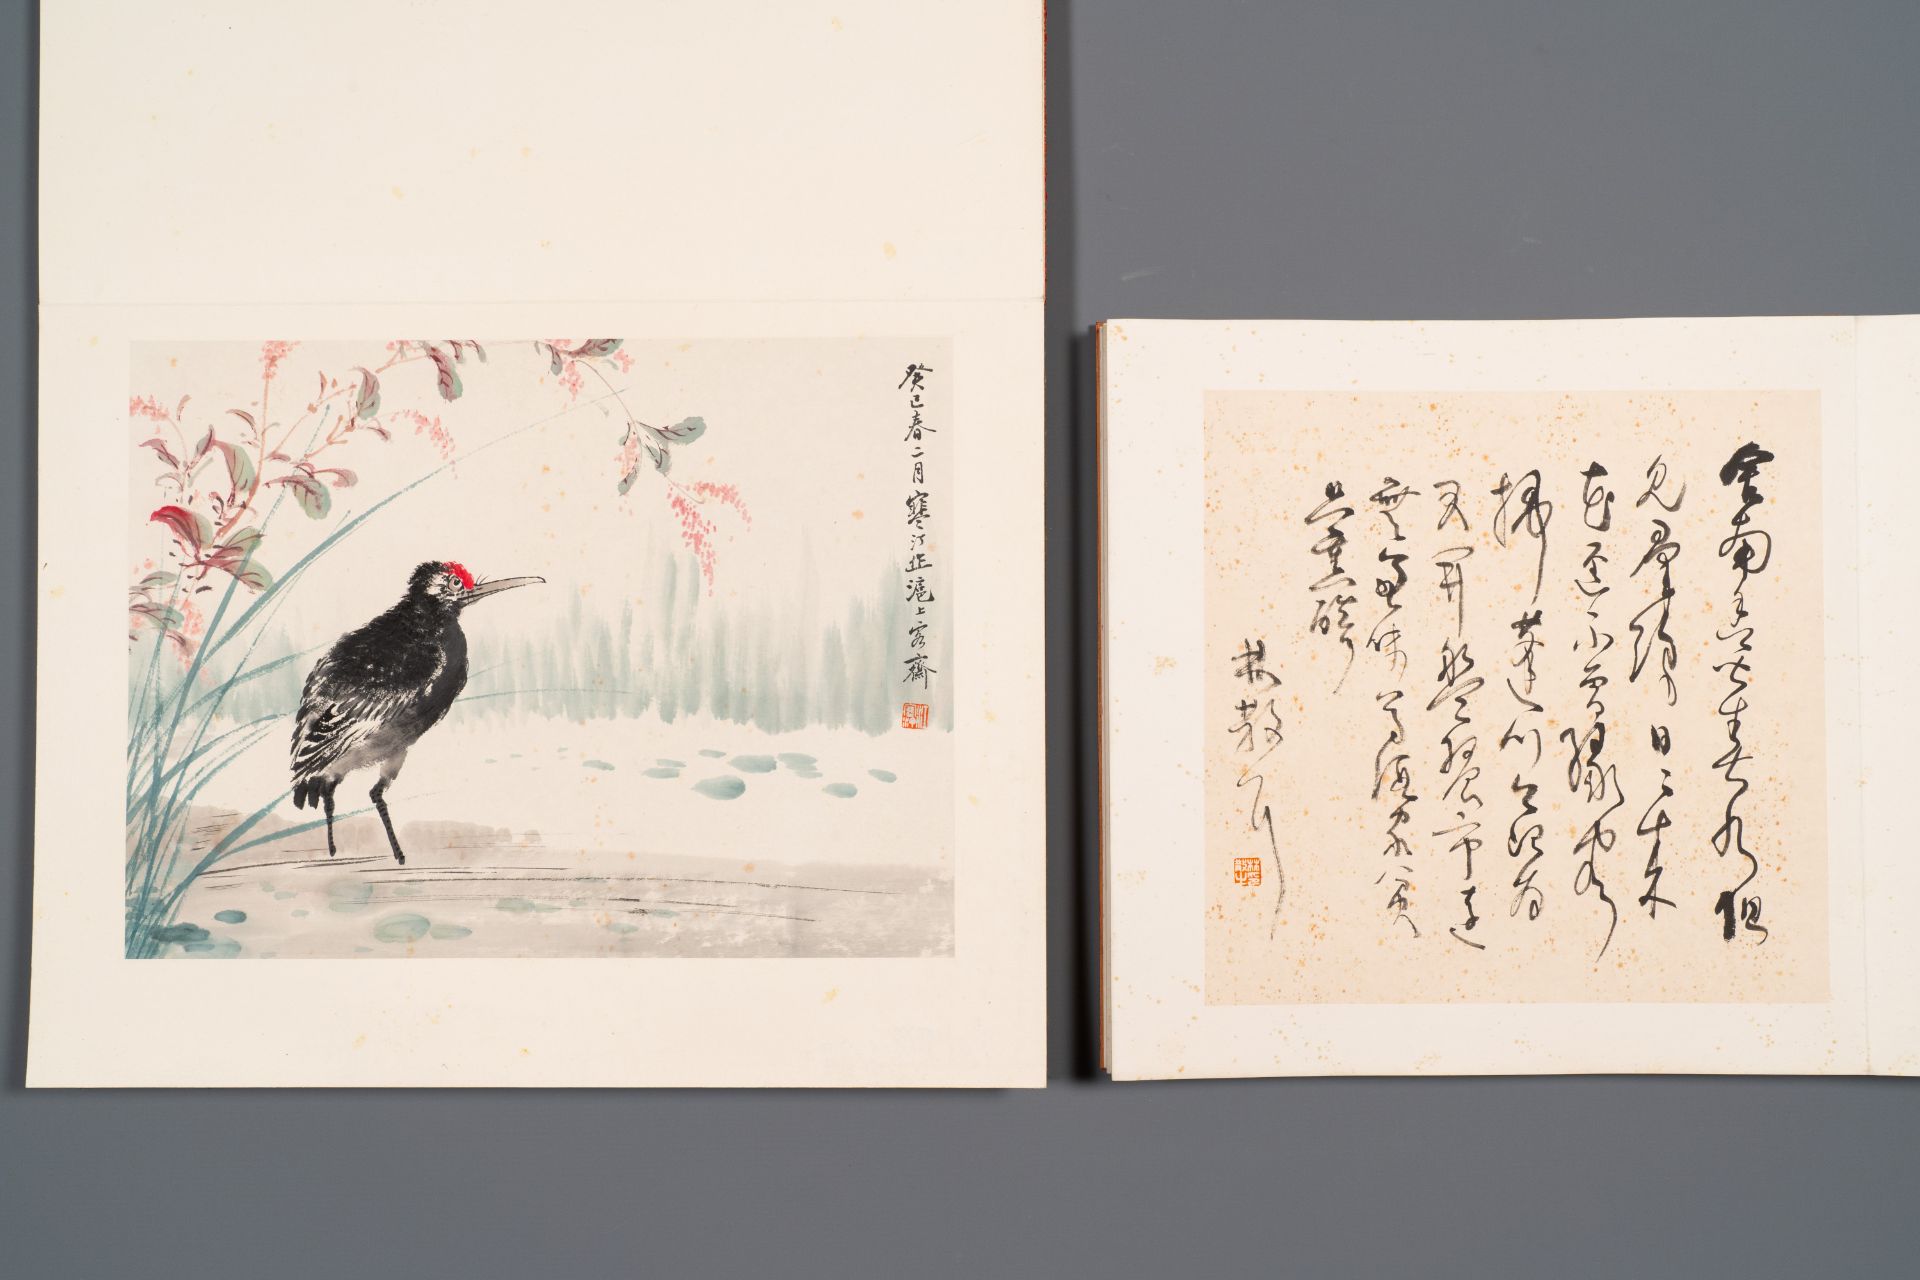 Three albums: 'Jiang Hanting æ±Ÿå¯’æ±€ (1904-1963), Lin Sanzhi æž—æ•£ä¹‹ (1898-1989) and Qi Gong å¯ - Bild 10 aus 23